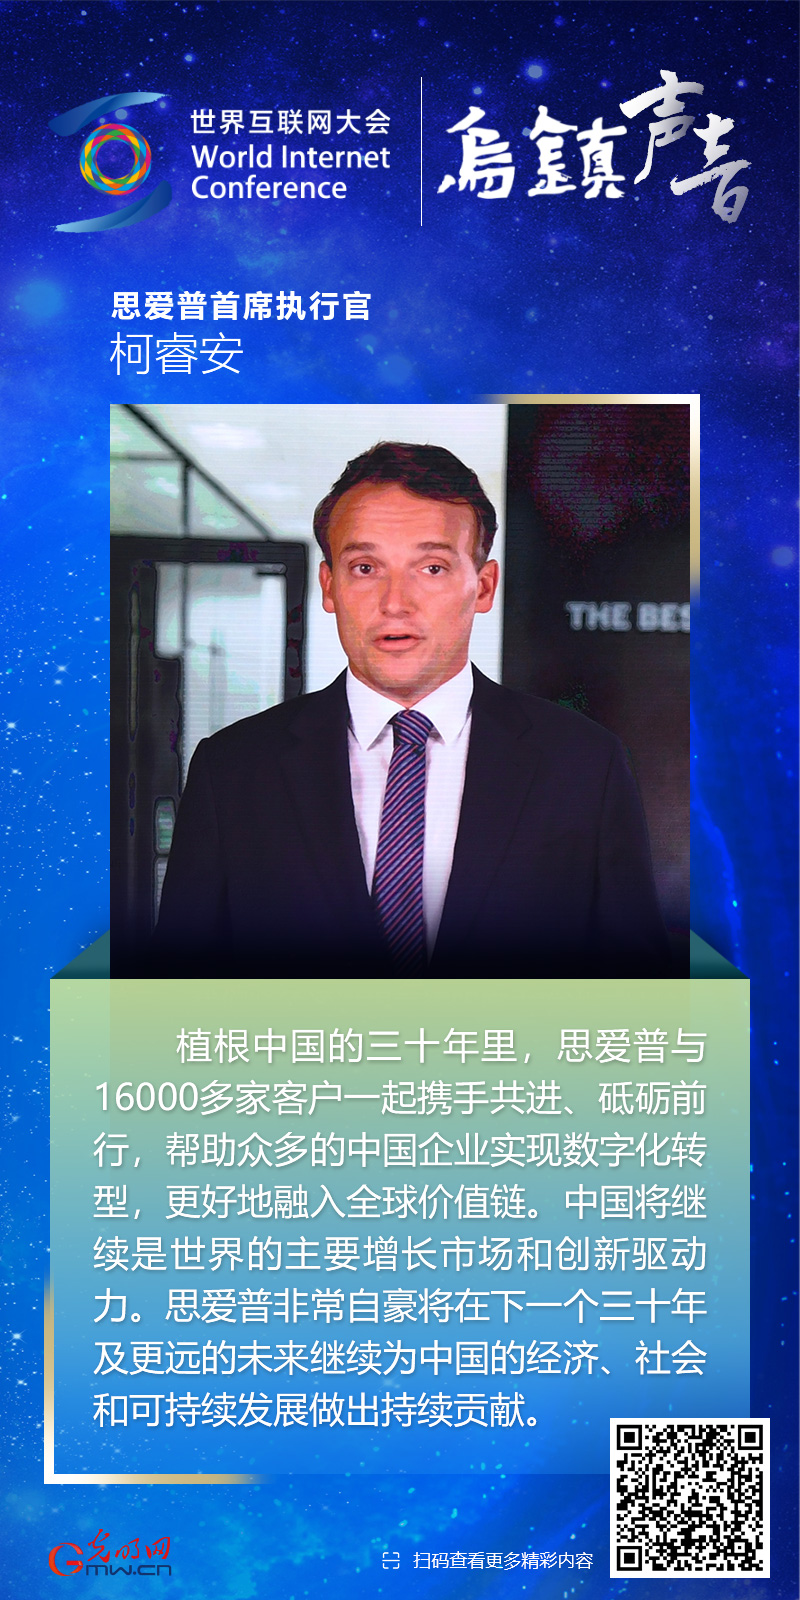 【乌镇声音】海报丨思爱普首席执行官柯睿安：中国是世界主要增长市场和创新驱动力